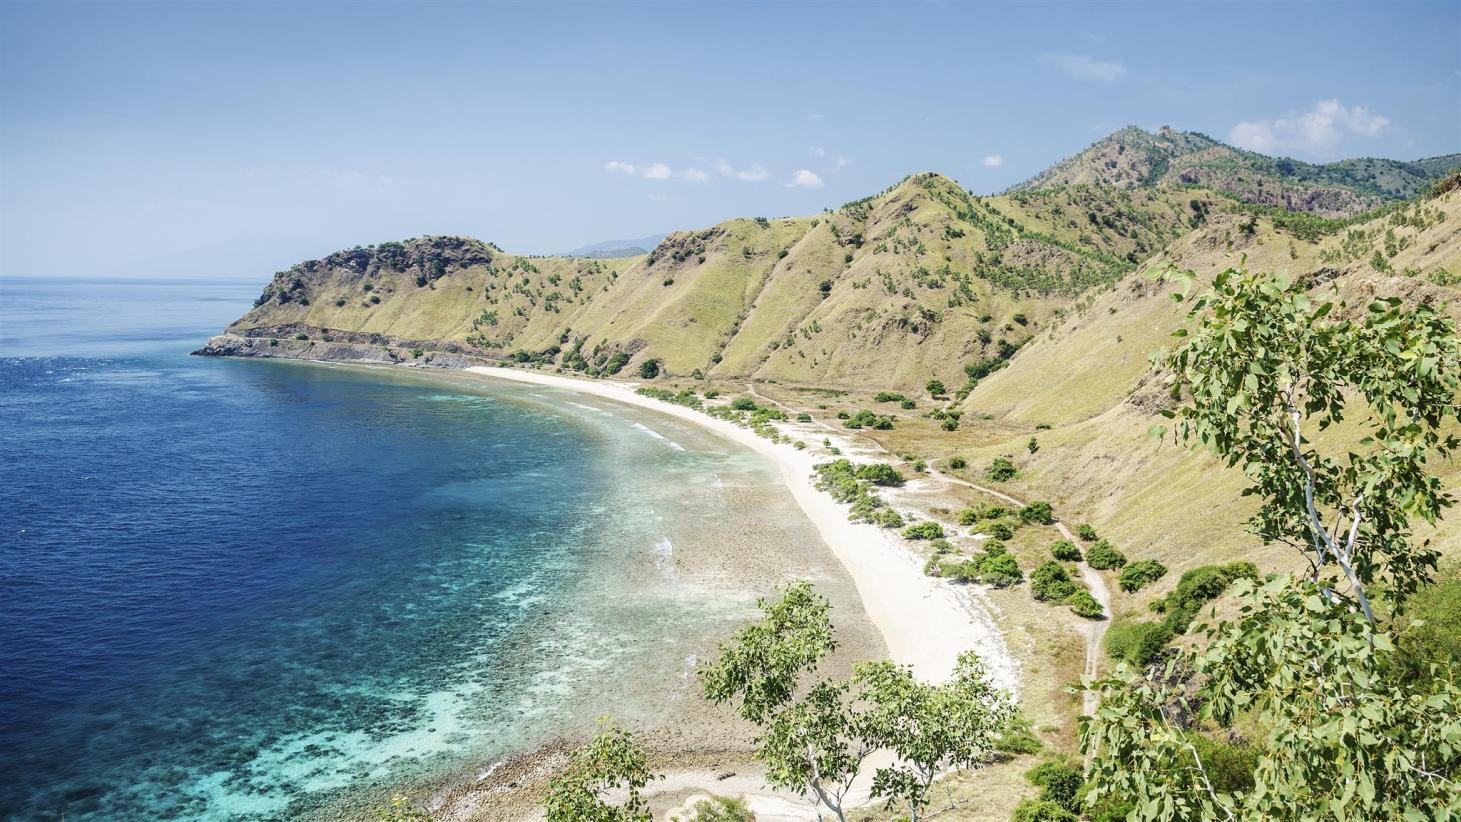 Biển tại Dili, thủ đô Timor Leste. Ảnh: Shutterstock